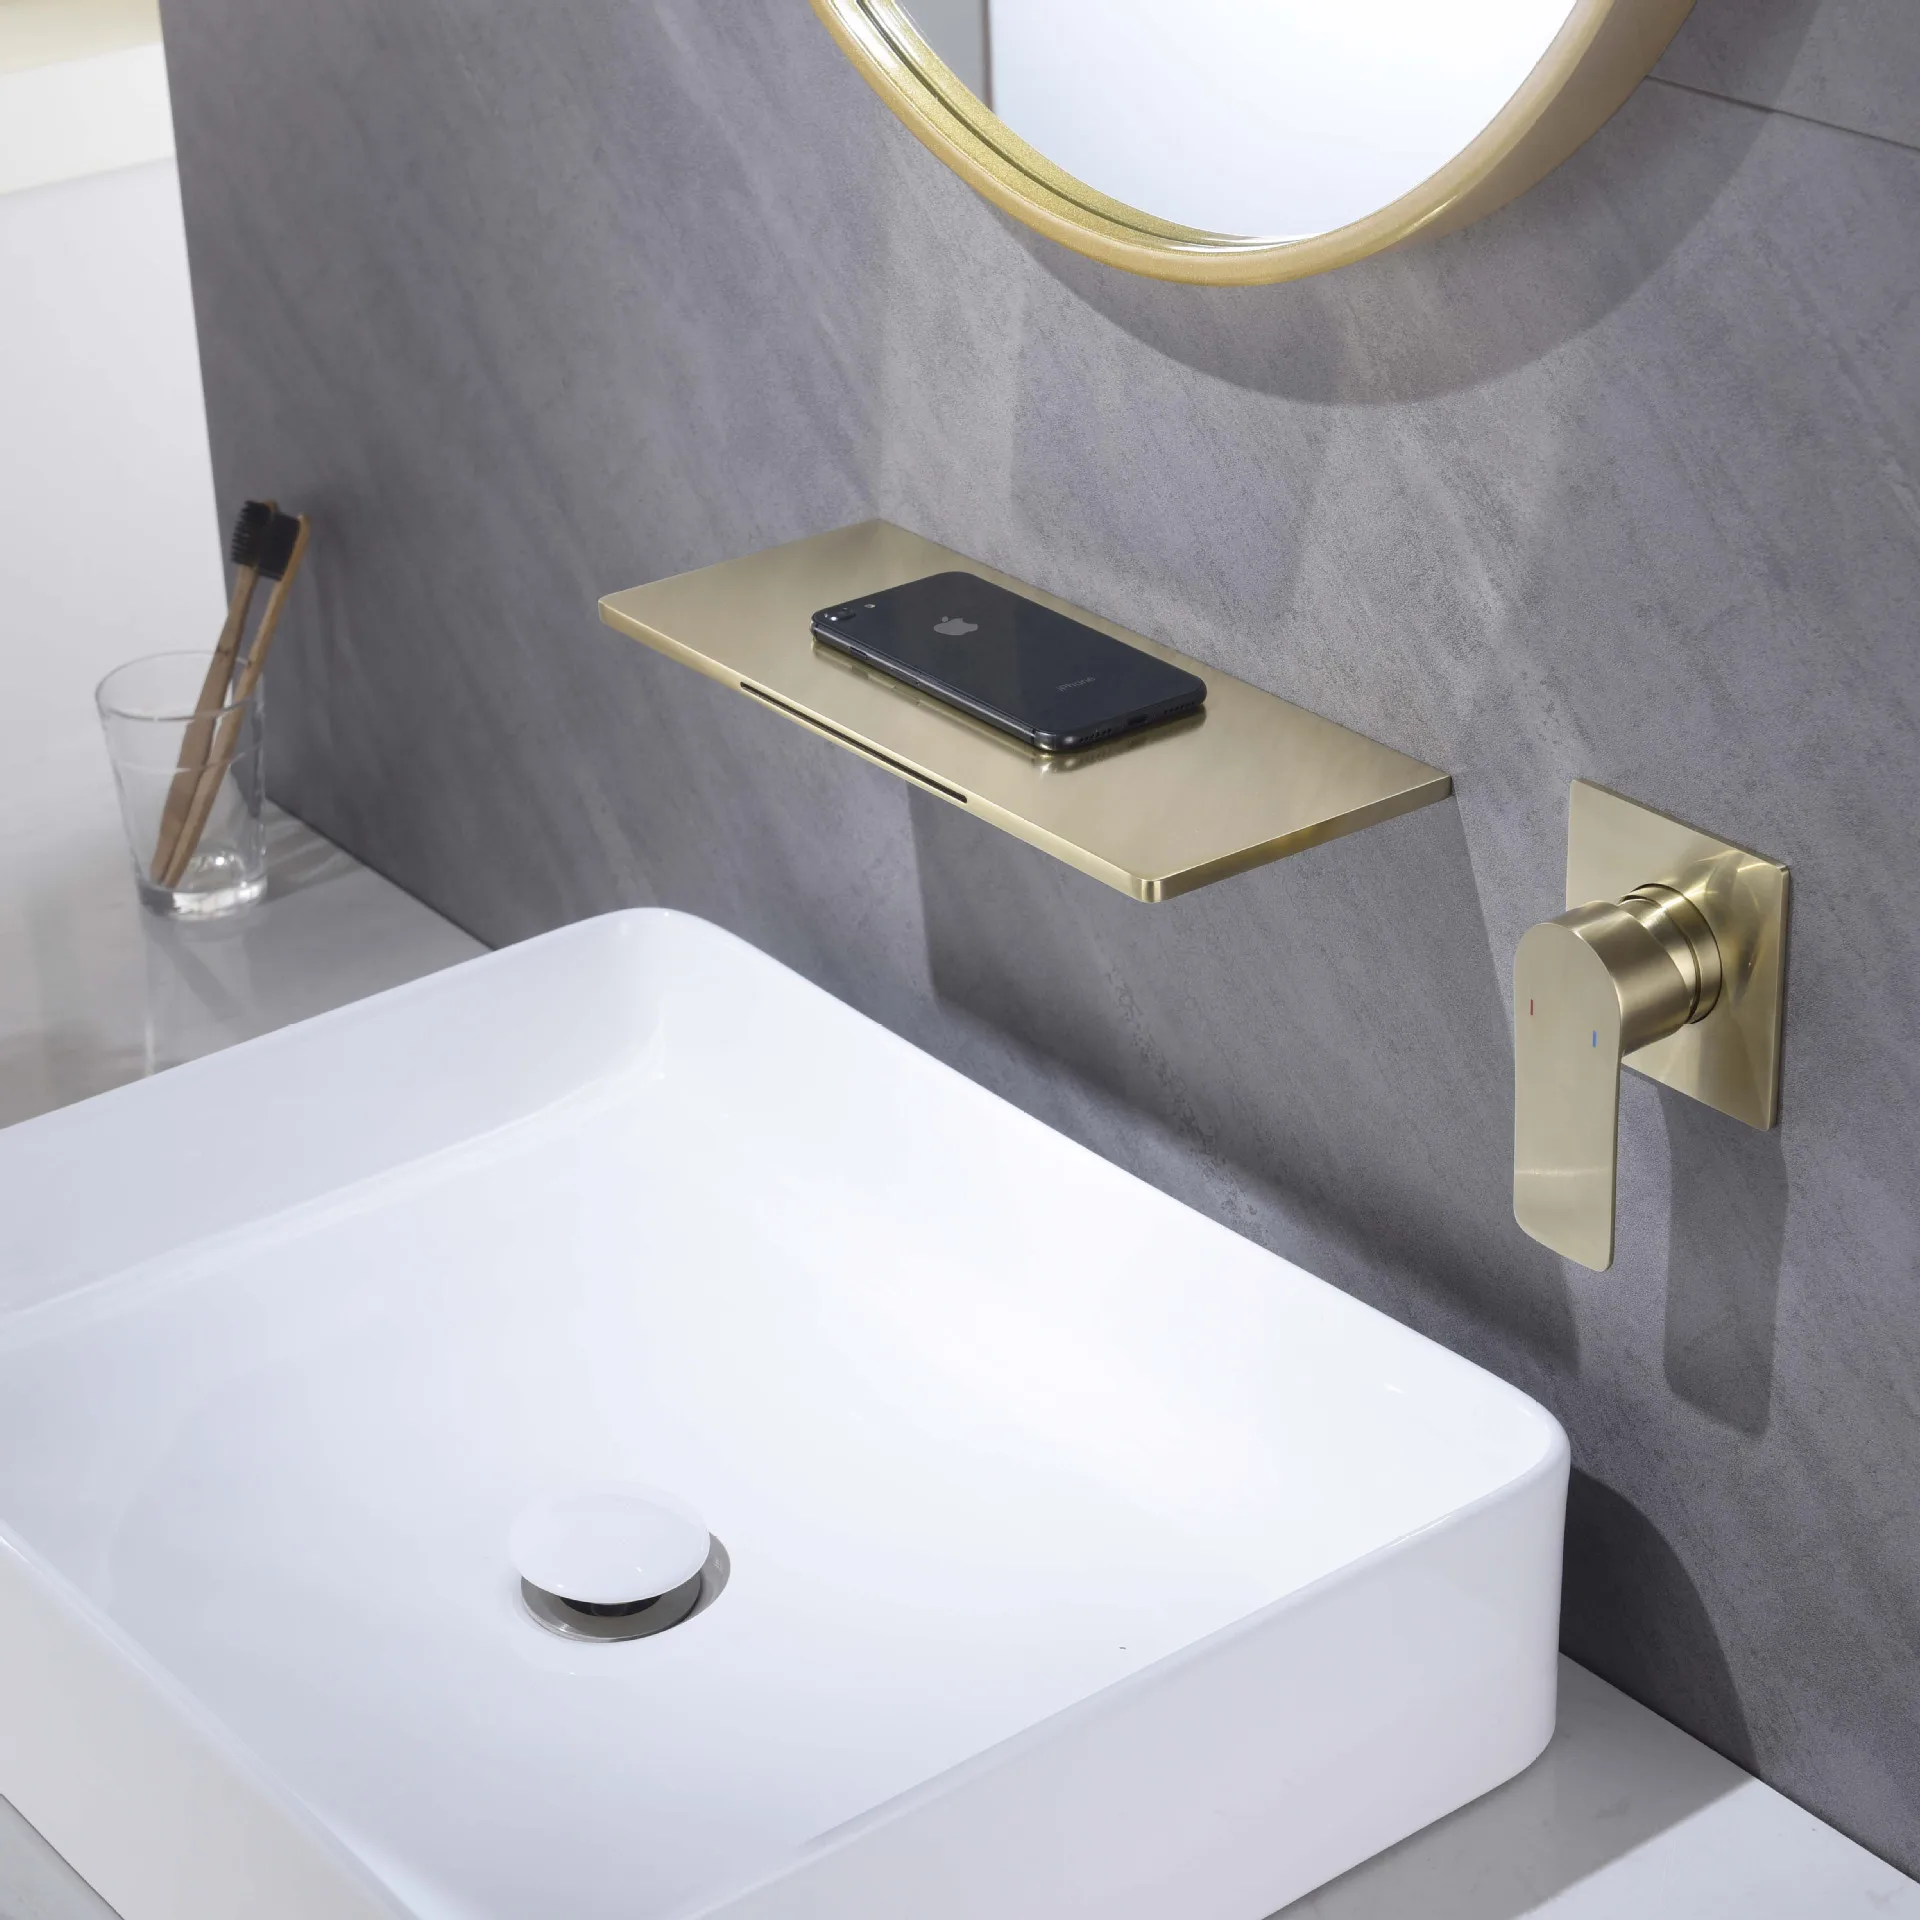 

Настенный смеситель из нержавеющей стали 304 для раковины в стиле водопада для ванной комнаты и ванной комнаты в отеле золотого цвета